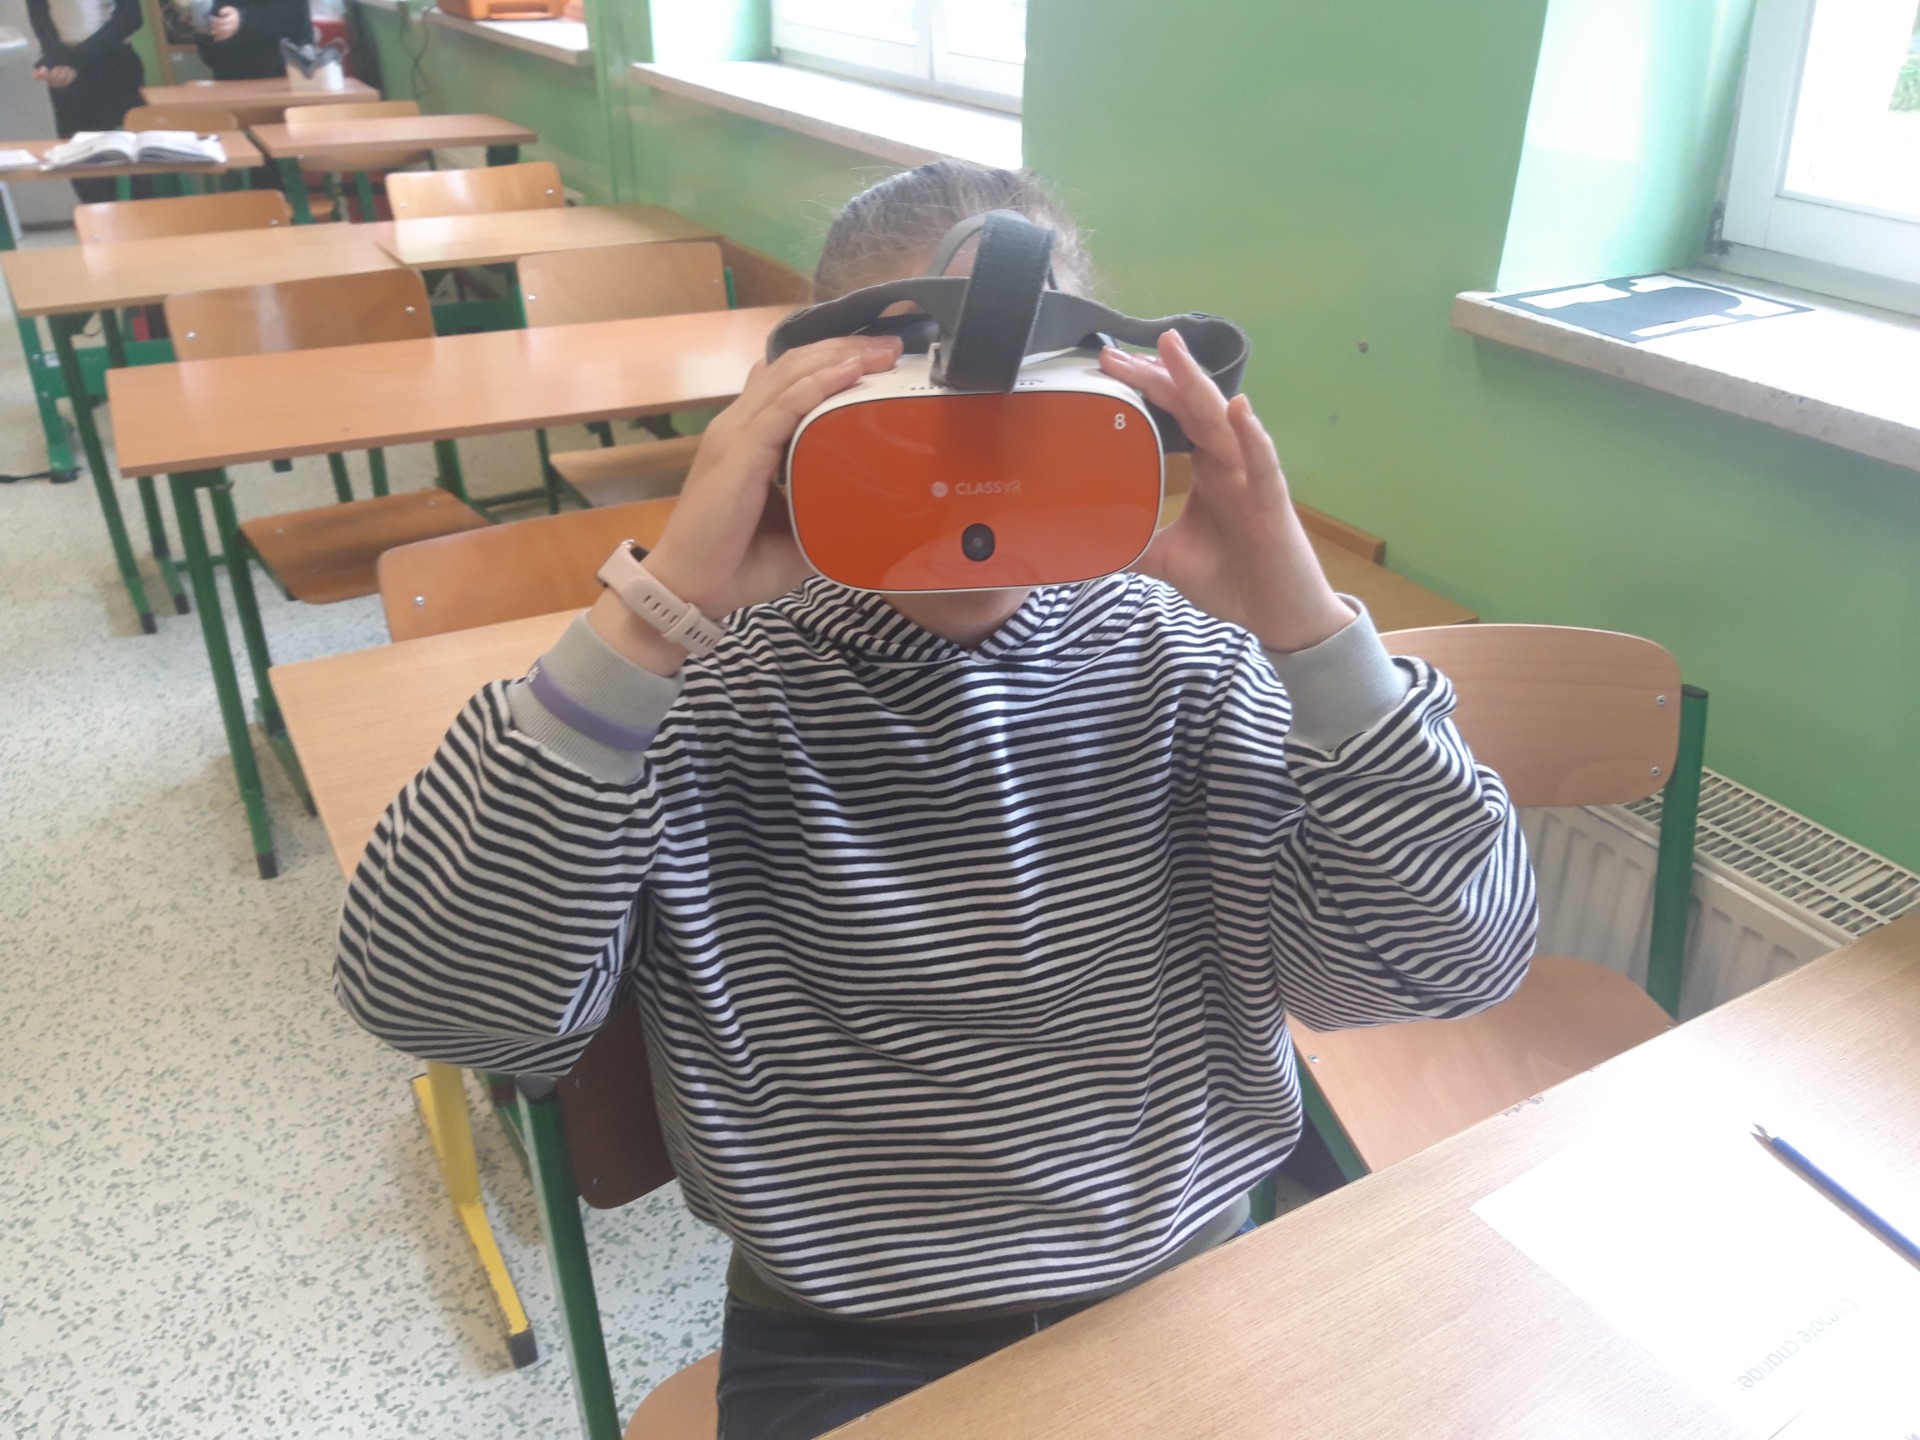 Okulary VR, czyli wirtualny świat na lekcji angielskiego #LaboratoriaPrzyszłości - Obrazek 1